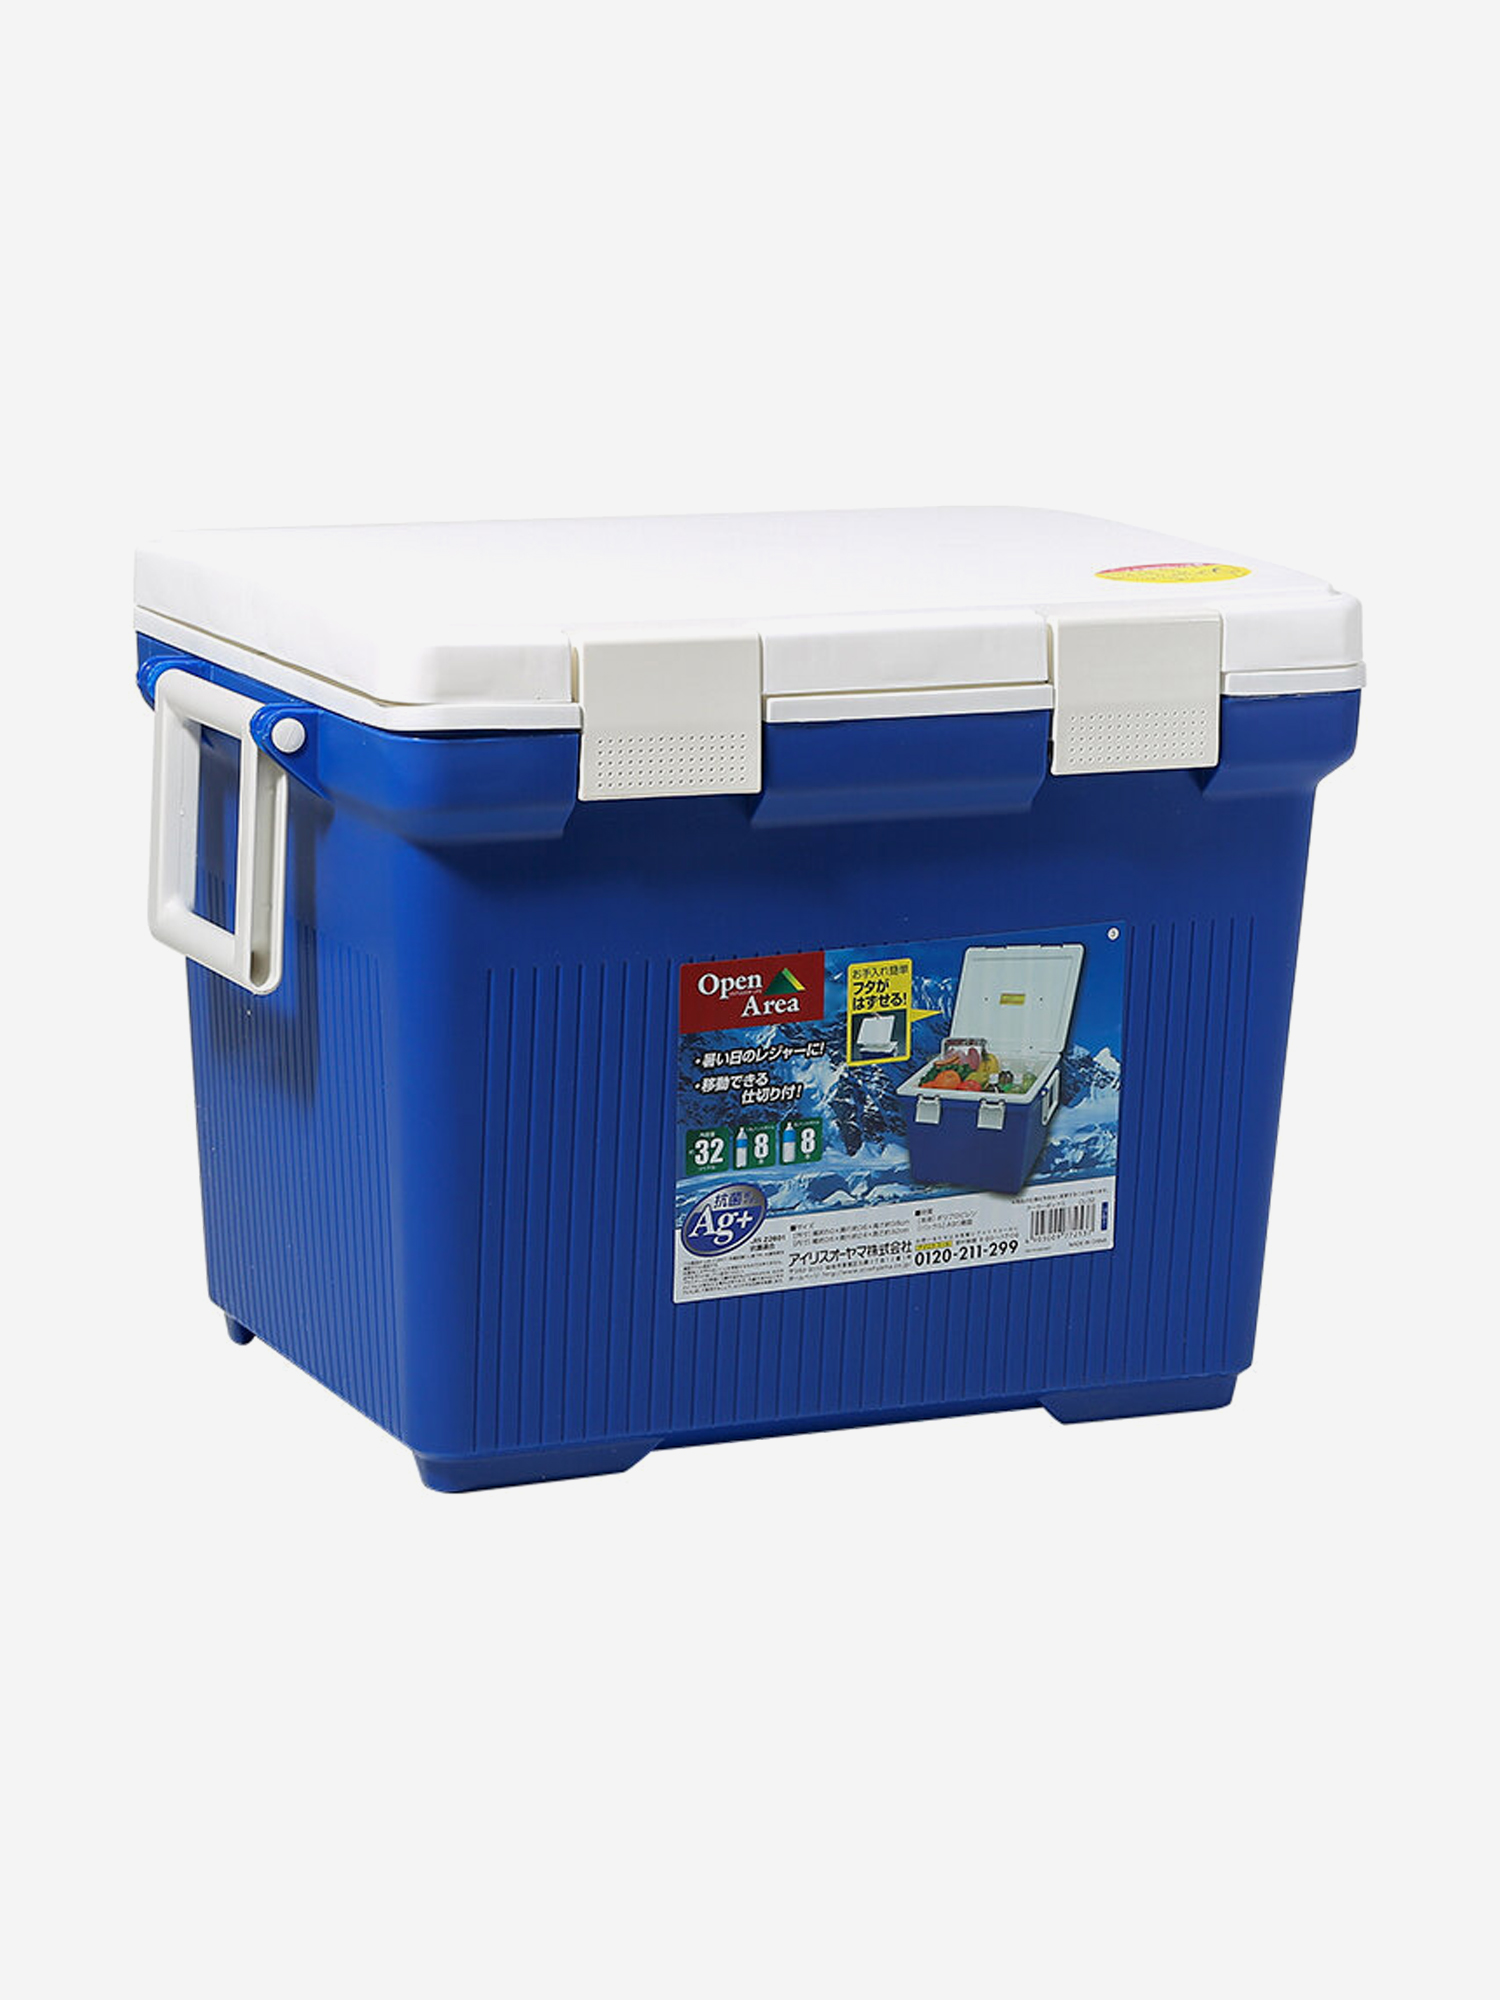 Термобокс IRIS OHYAMA Cooler Box CL-32, 32 литра синий/белый, Синий термобокс shinwa holiday land cooler 48h синий синий